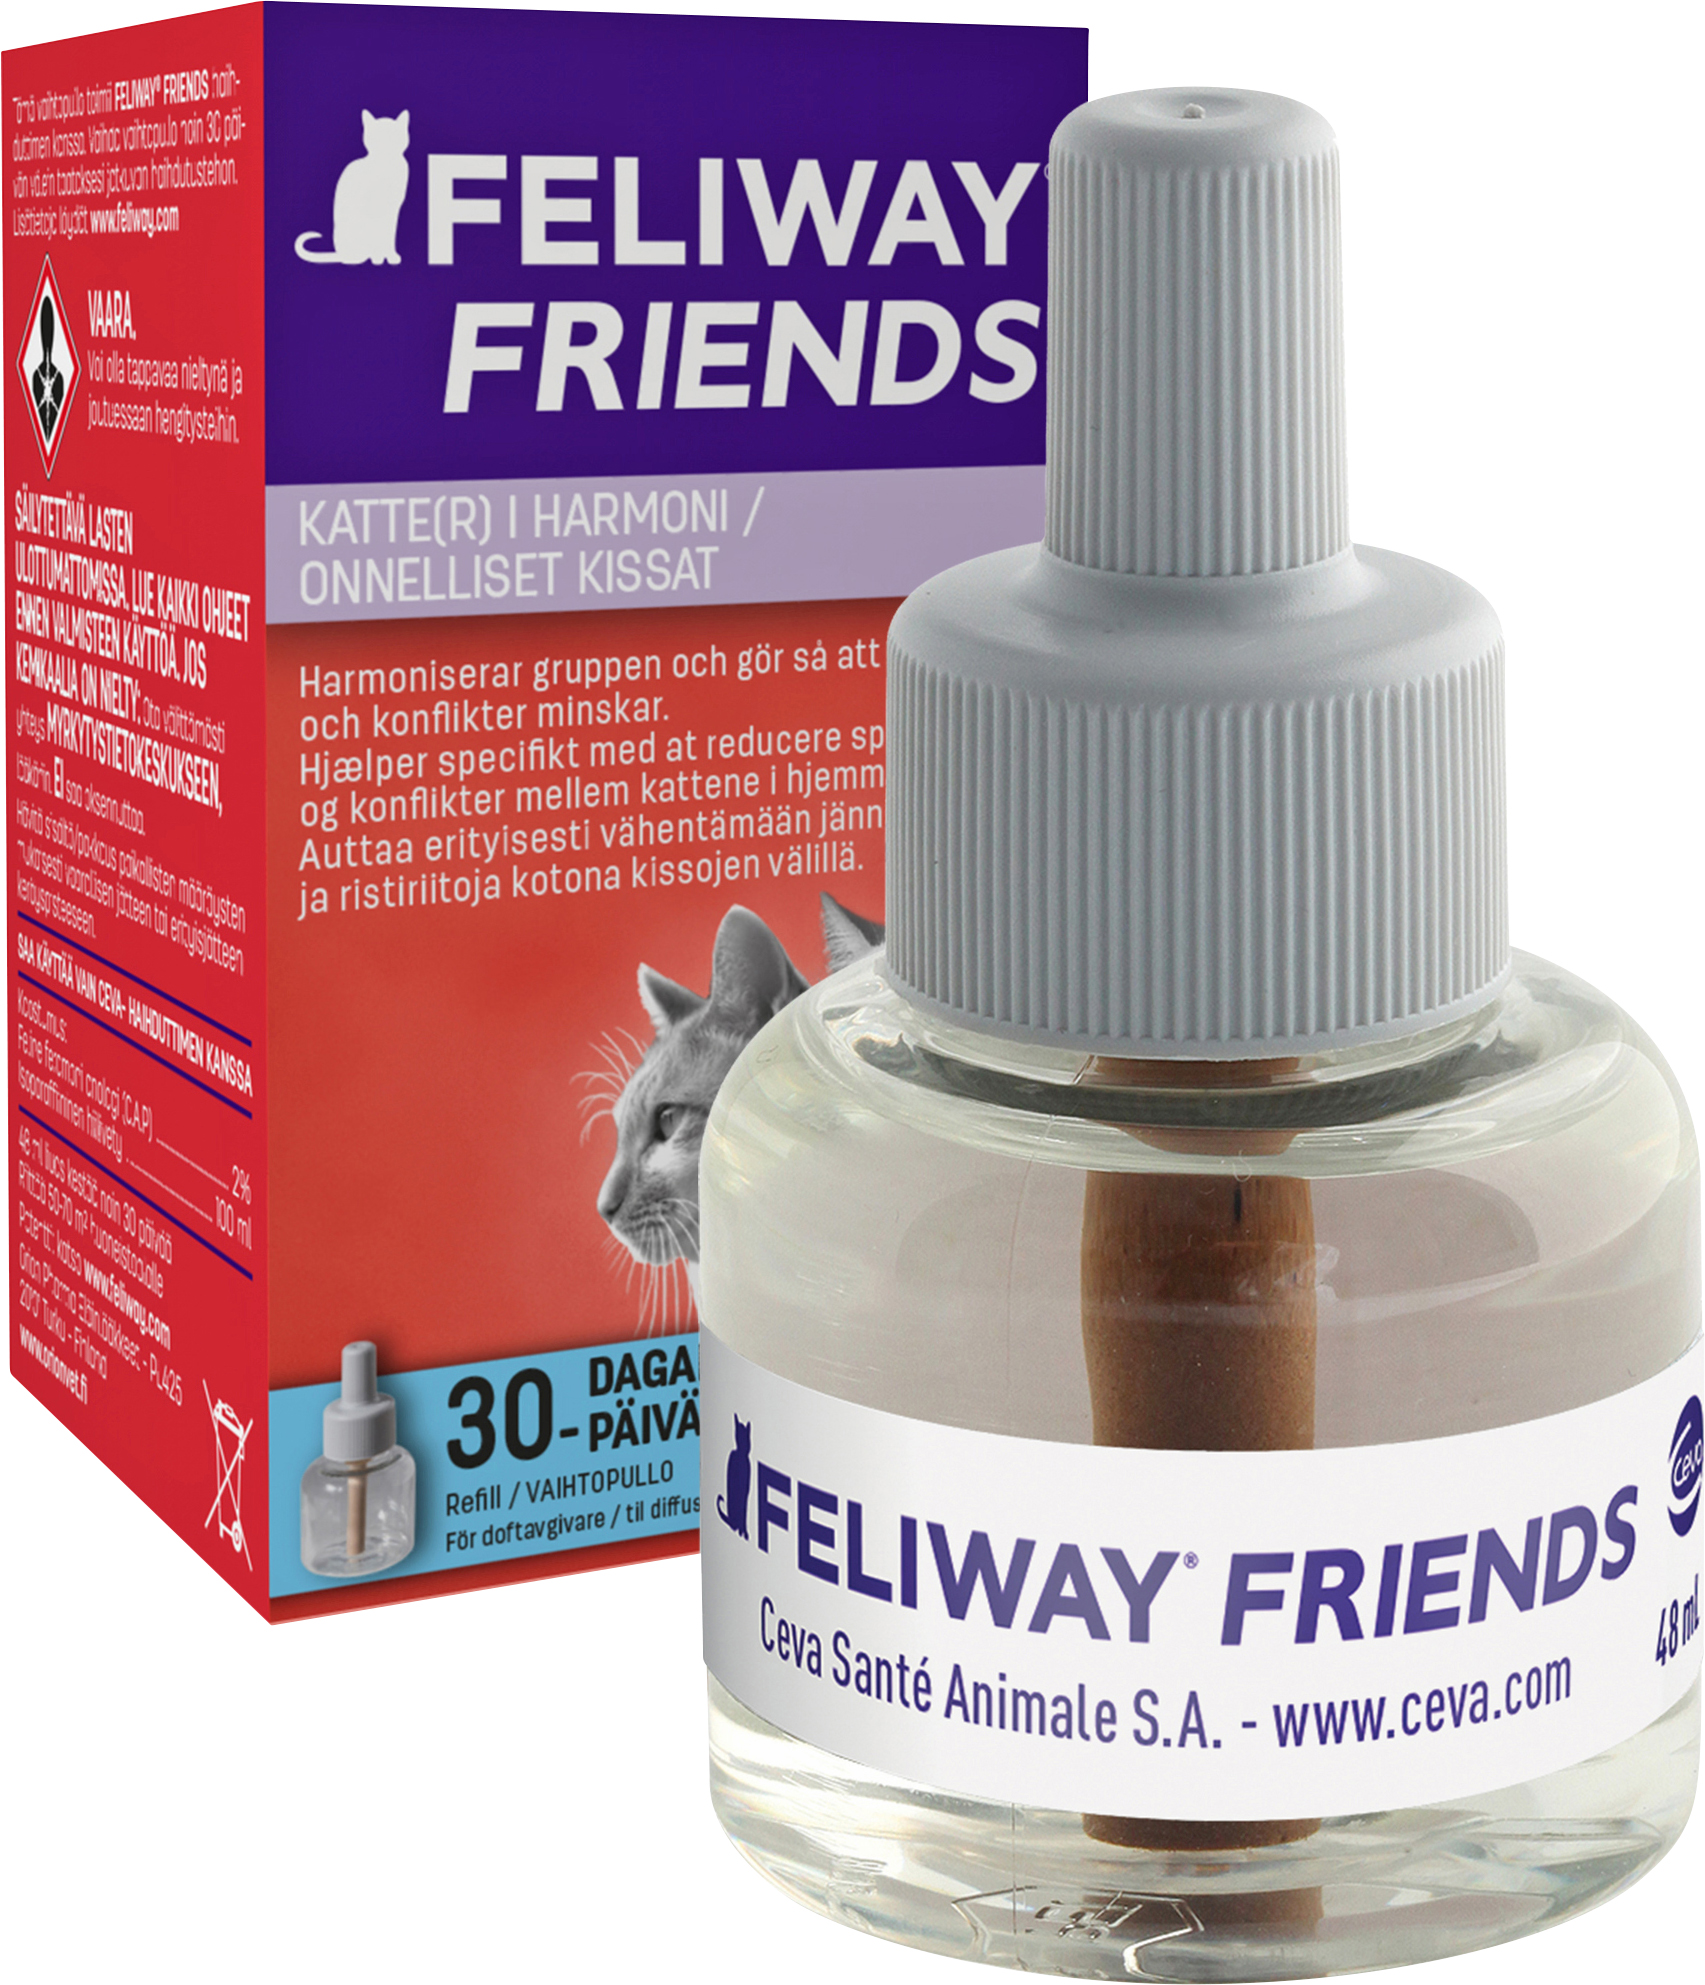 Refill till Doftavgivare Feliway Friends 48ml